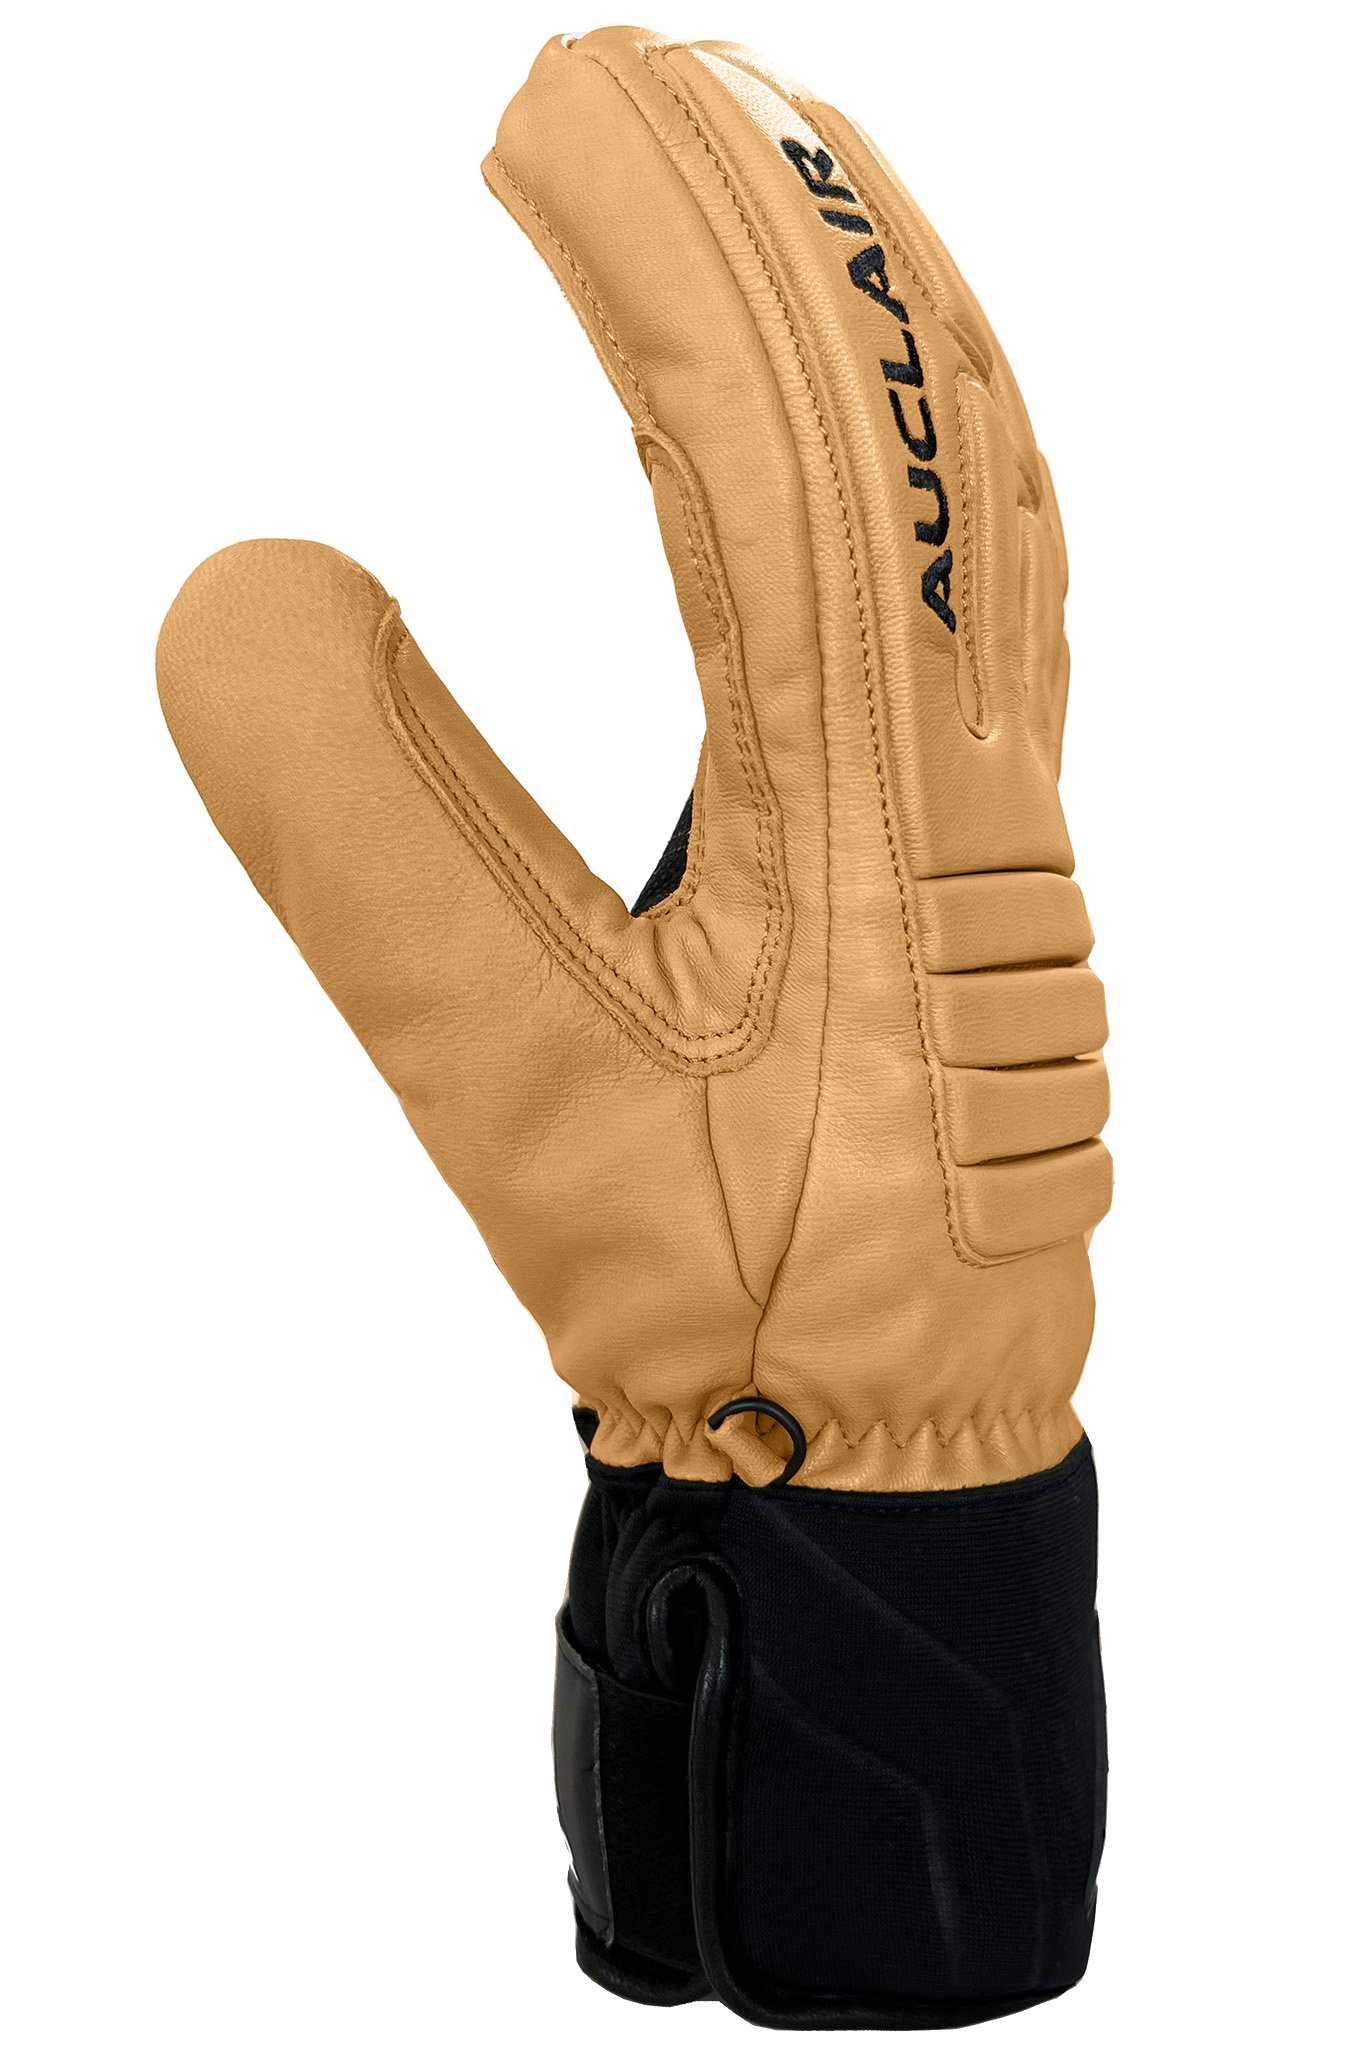 Outseam Gloves - Adult-Glove-Auclair-Auclair Sports